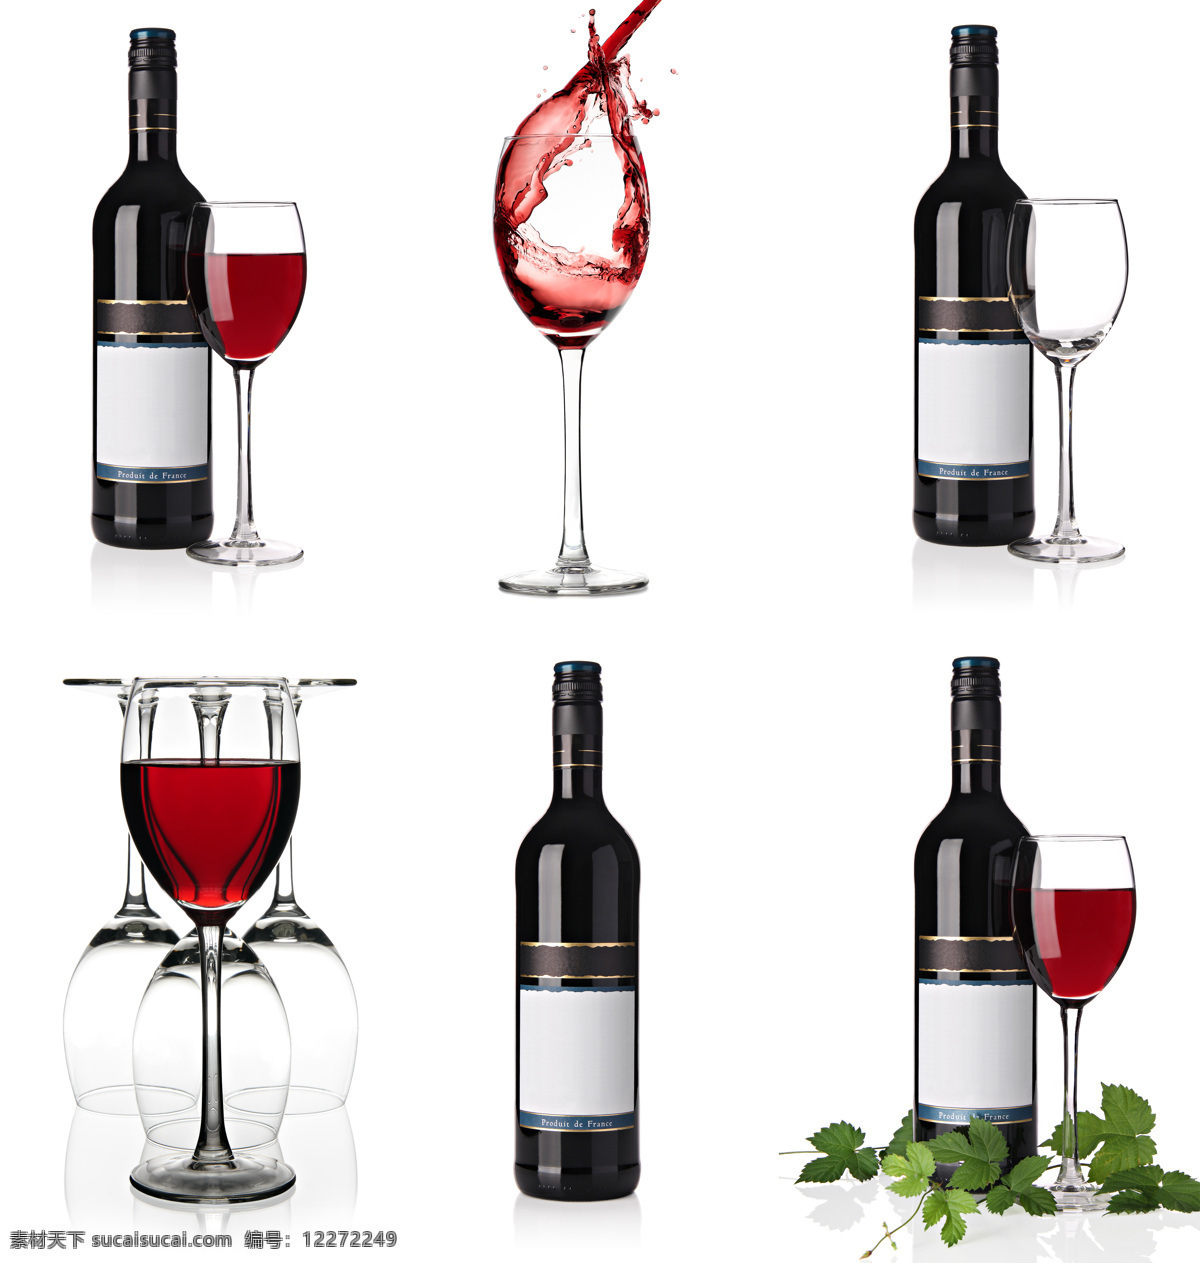 红 白葡萄酒 拼贴 酒瓶 酒杯 设计素材 高清大图 酒水饮料 餐饮美食 白色